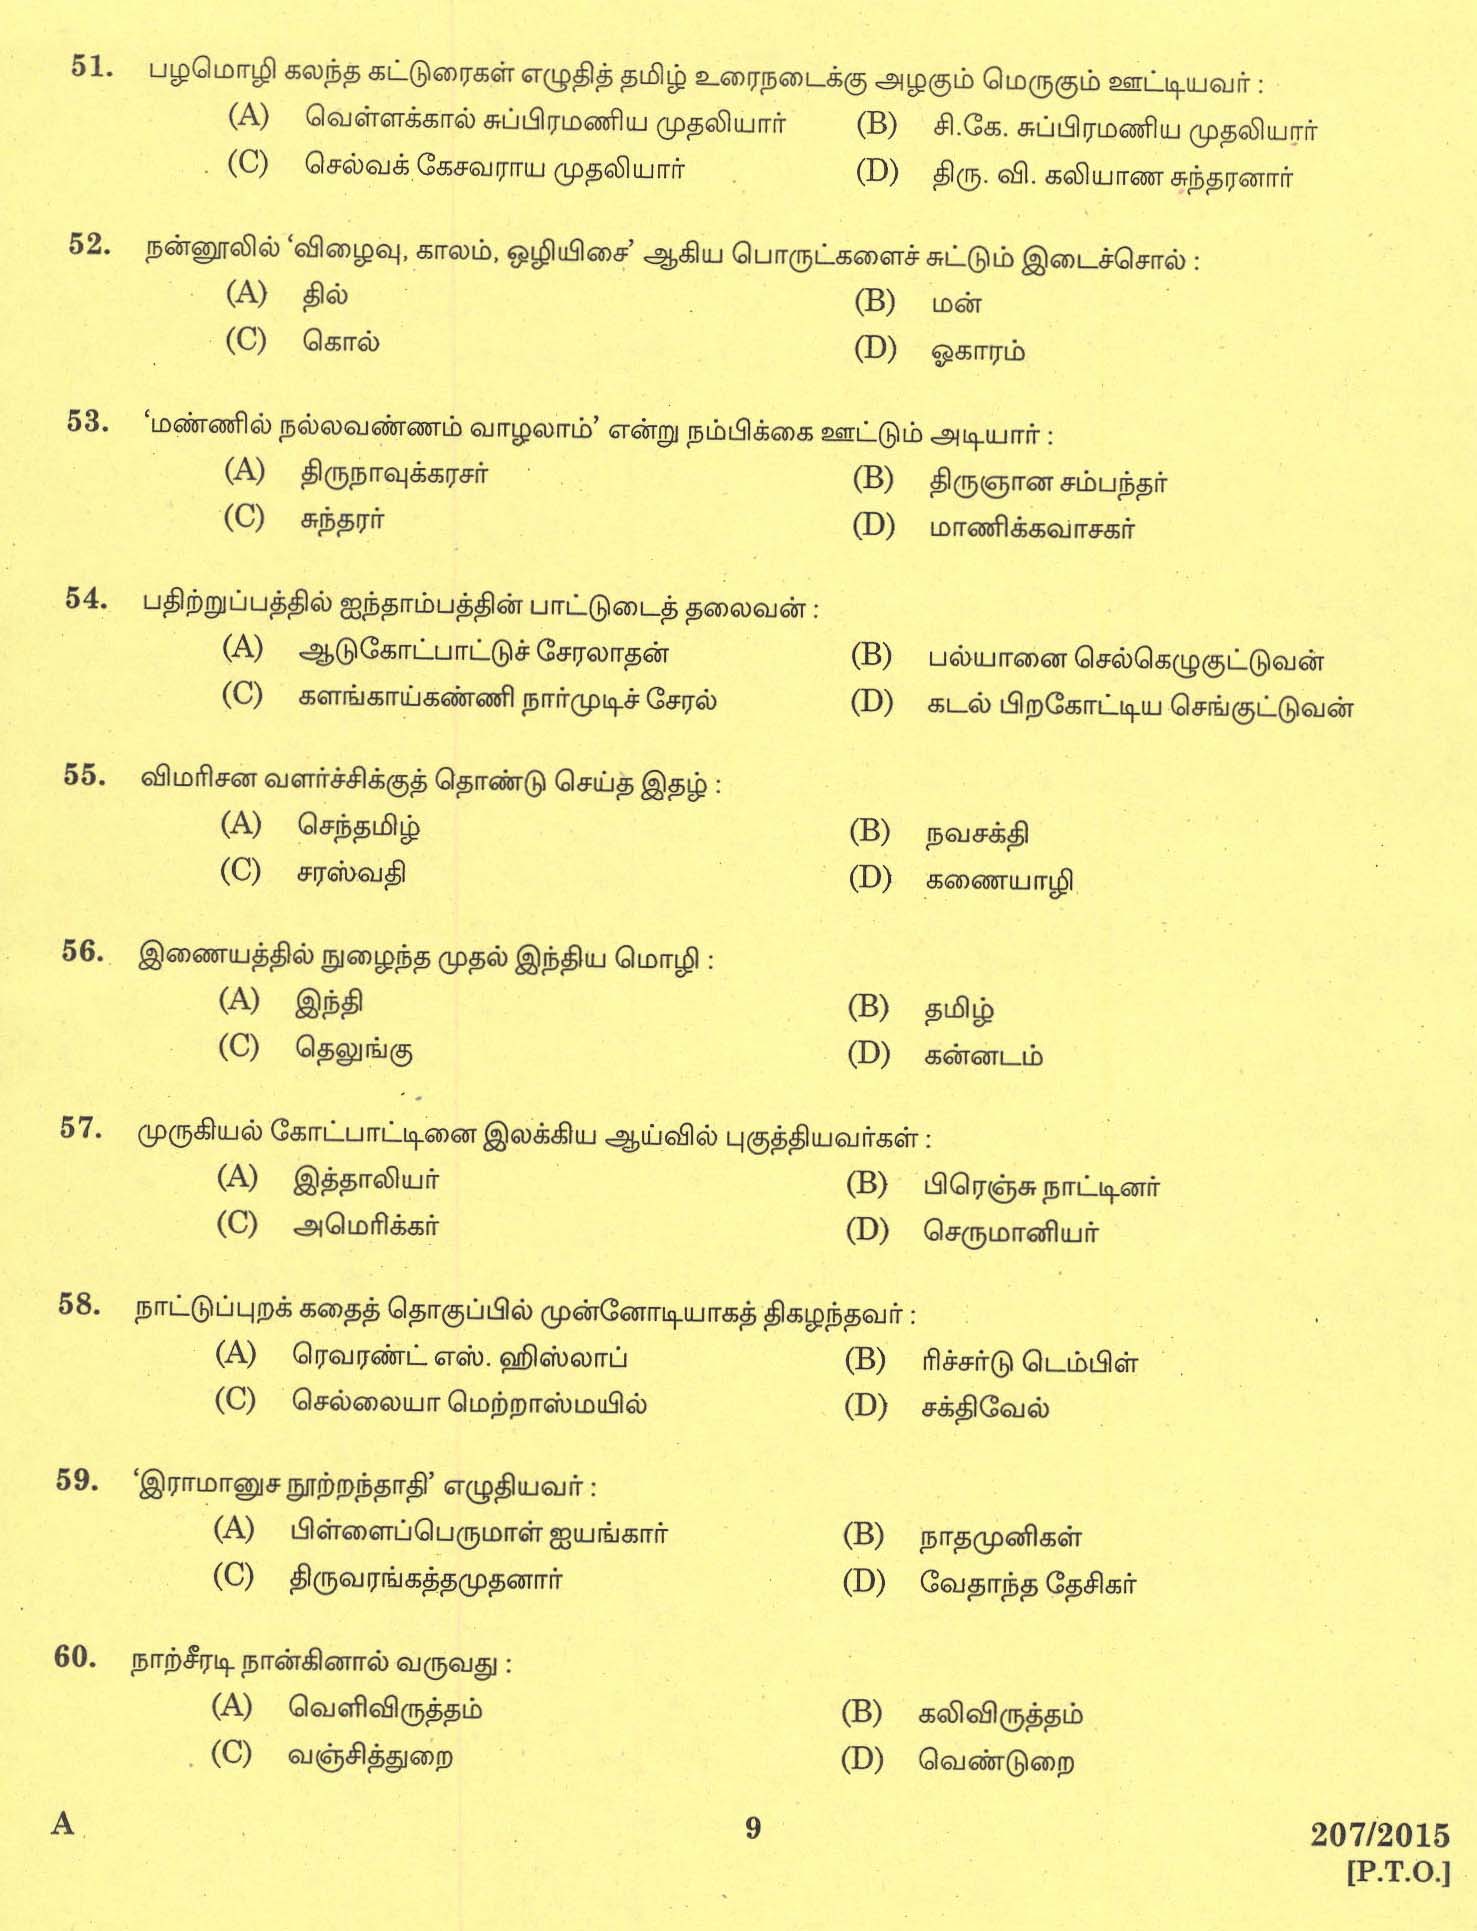 KPSC Lecturer in Tamil Exam 2015 Code 2072015 7